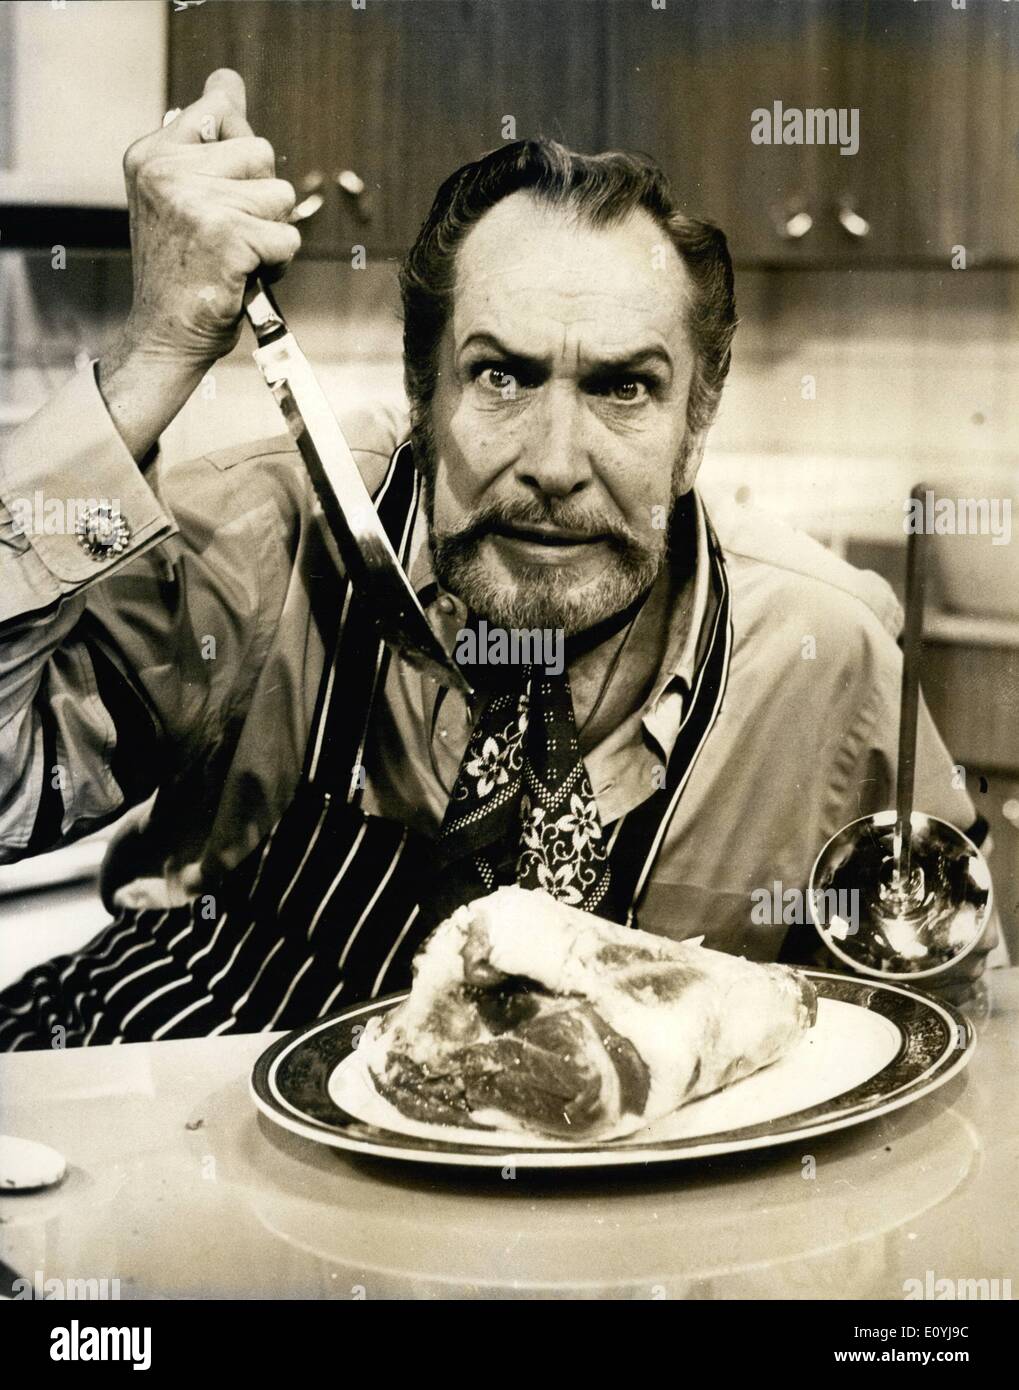 Juillet 07, 1970 - Vincent Price à la Star en cuisine pour Thames Television Series : Vincent Price, star du cinéma d'horreur ''king'' du cinéma américain, est à Londres pour une semaine à l'étoile dans sa propre série de télévision cuisine pour Thames. Price, qui a réalisé plus de 80 films, est également un célèbre chef cuisinier amateur et connaisseur de la bonne nourriture. Il a écrit plusieurs livres sur le sujet mais c'est la première fois qu'il a joué dans une série de cuisine. La série ''Price-Wise Cuisine'', aura une saveur internationale, avec des plats du monde, recueillis par M. et Mme Prix sur leurs voyages Banque D'Images